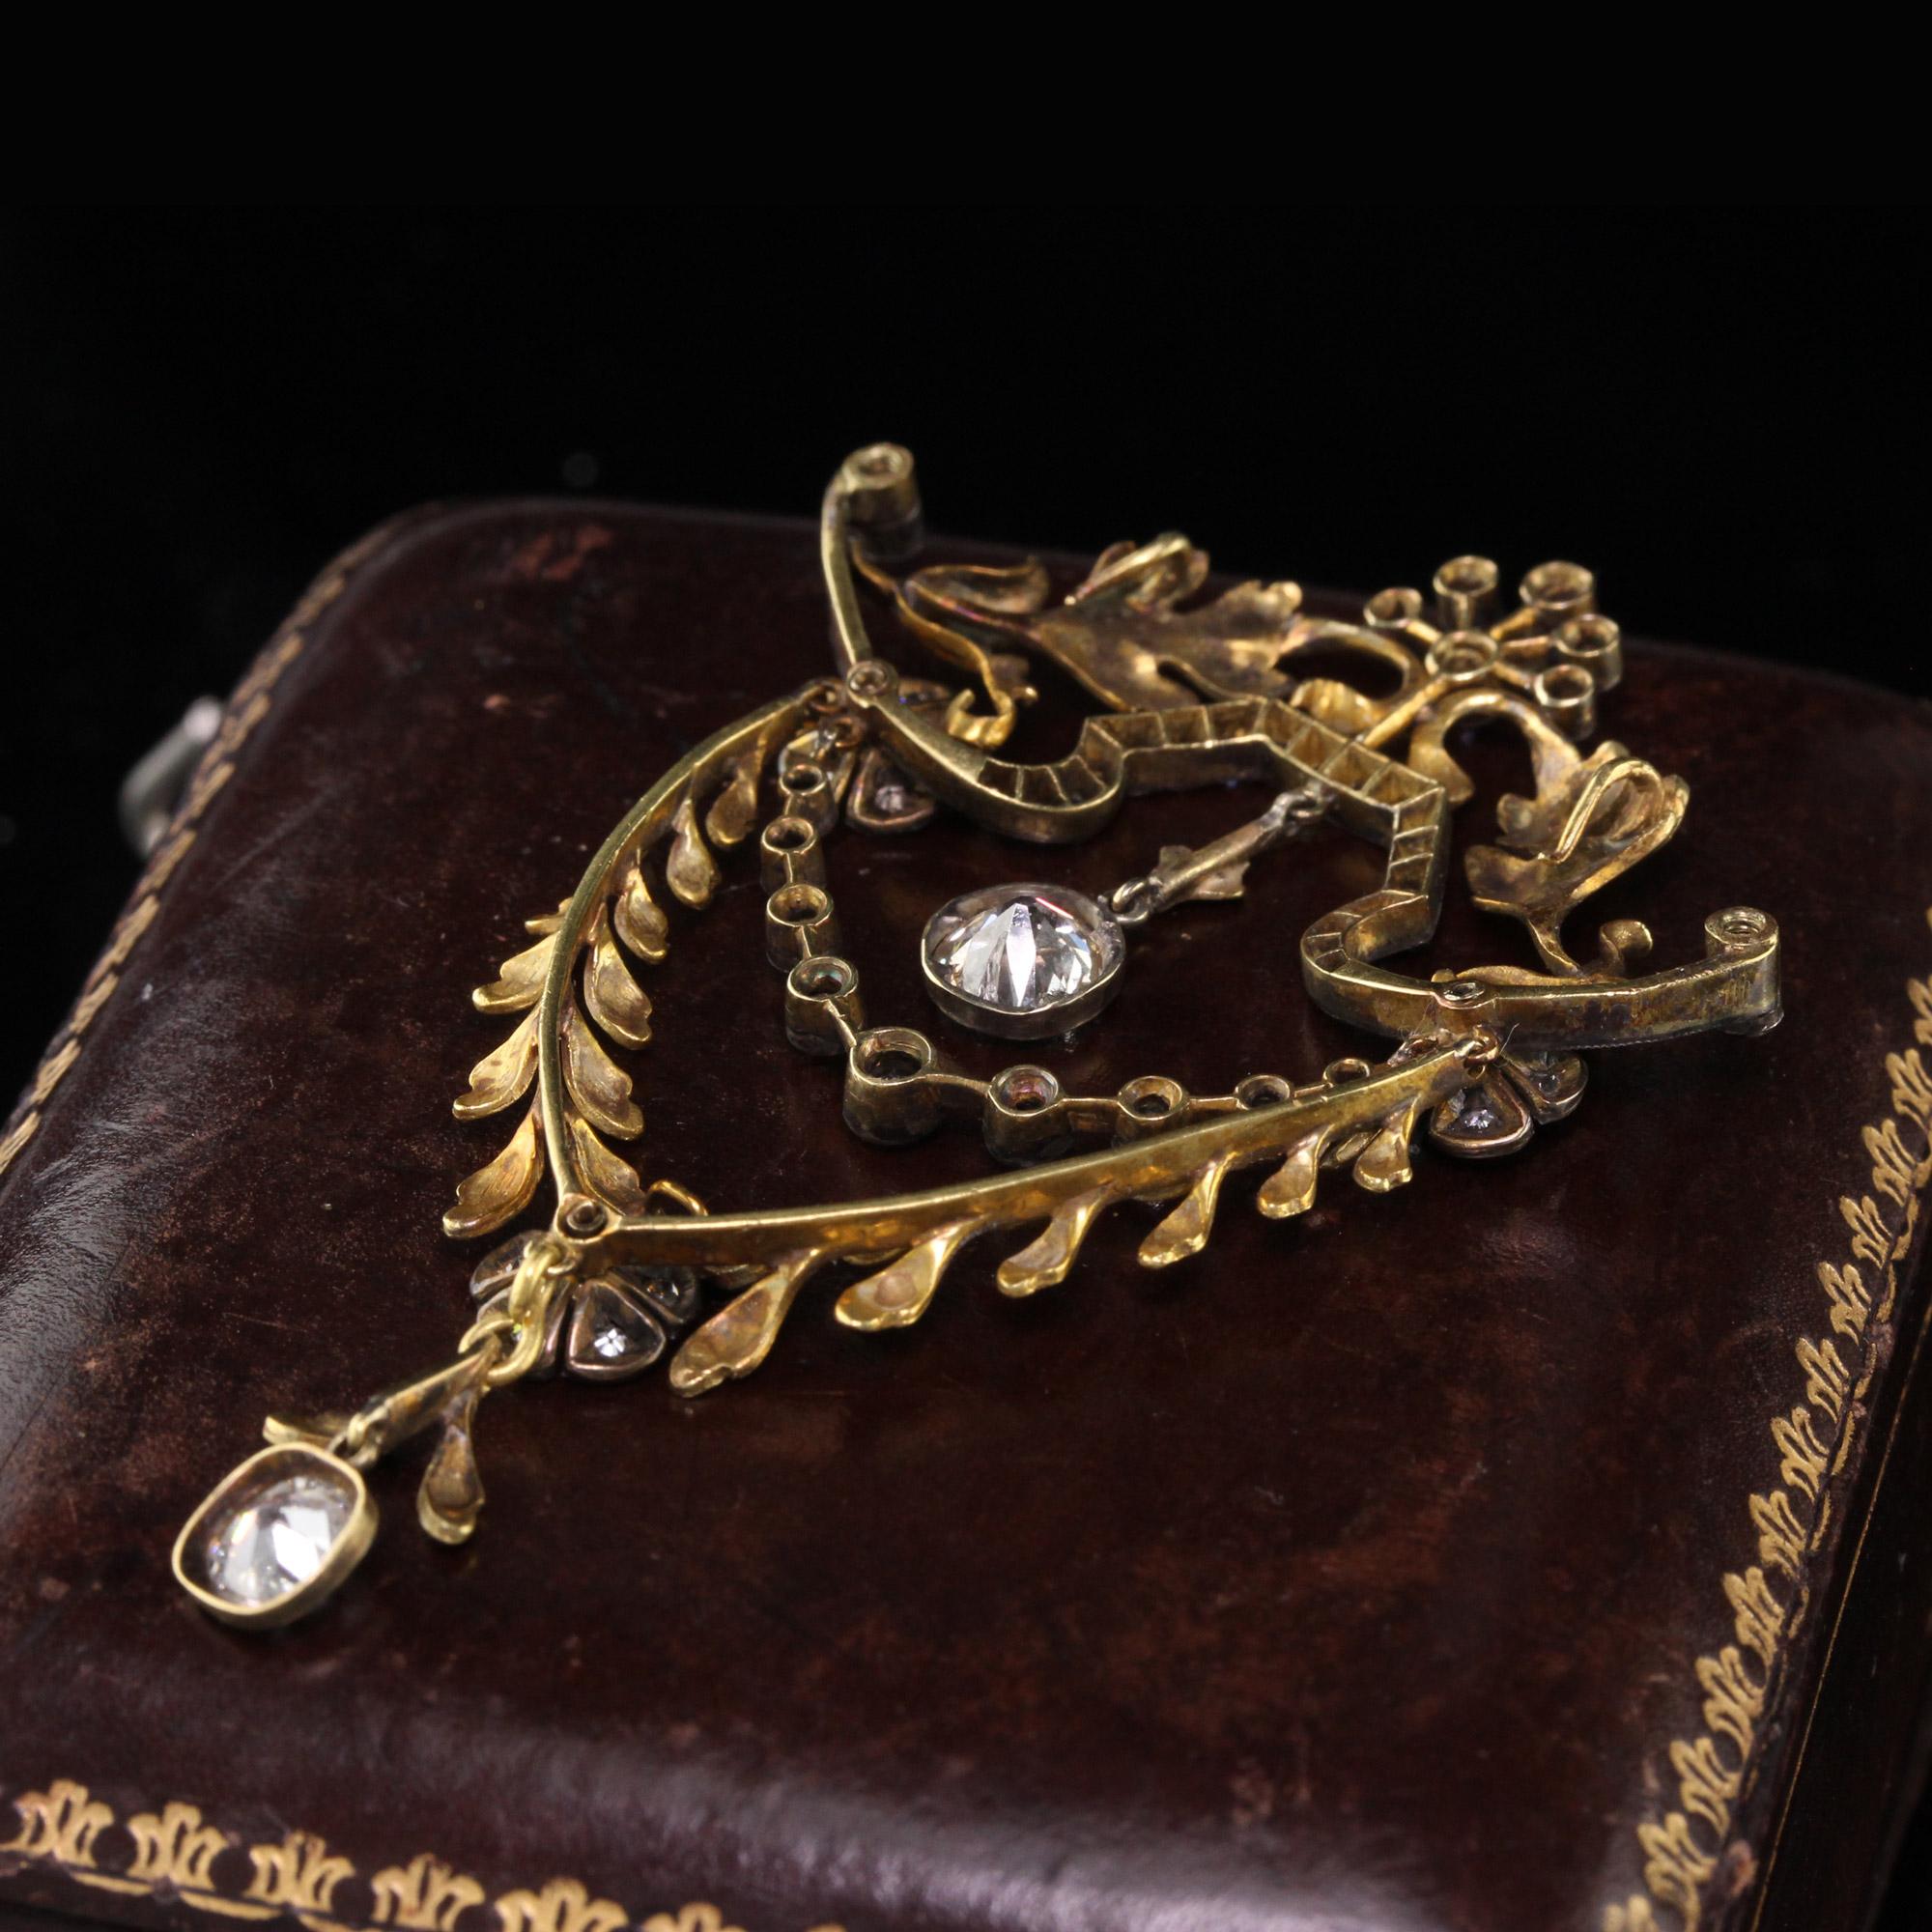 18th century brooch